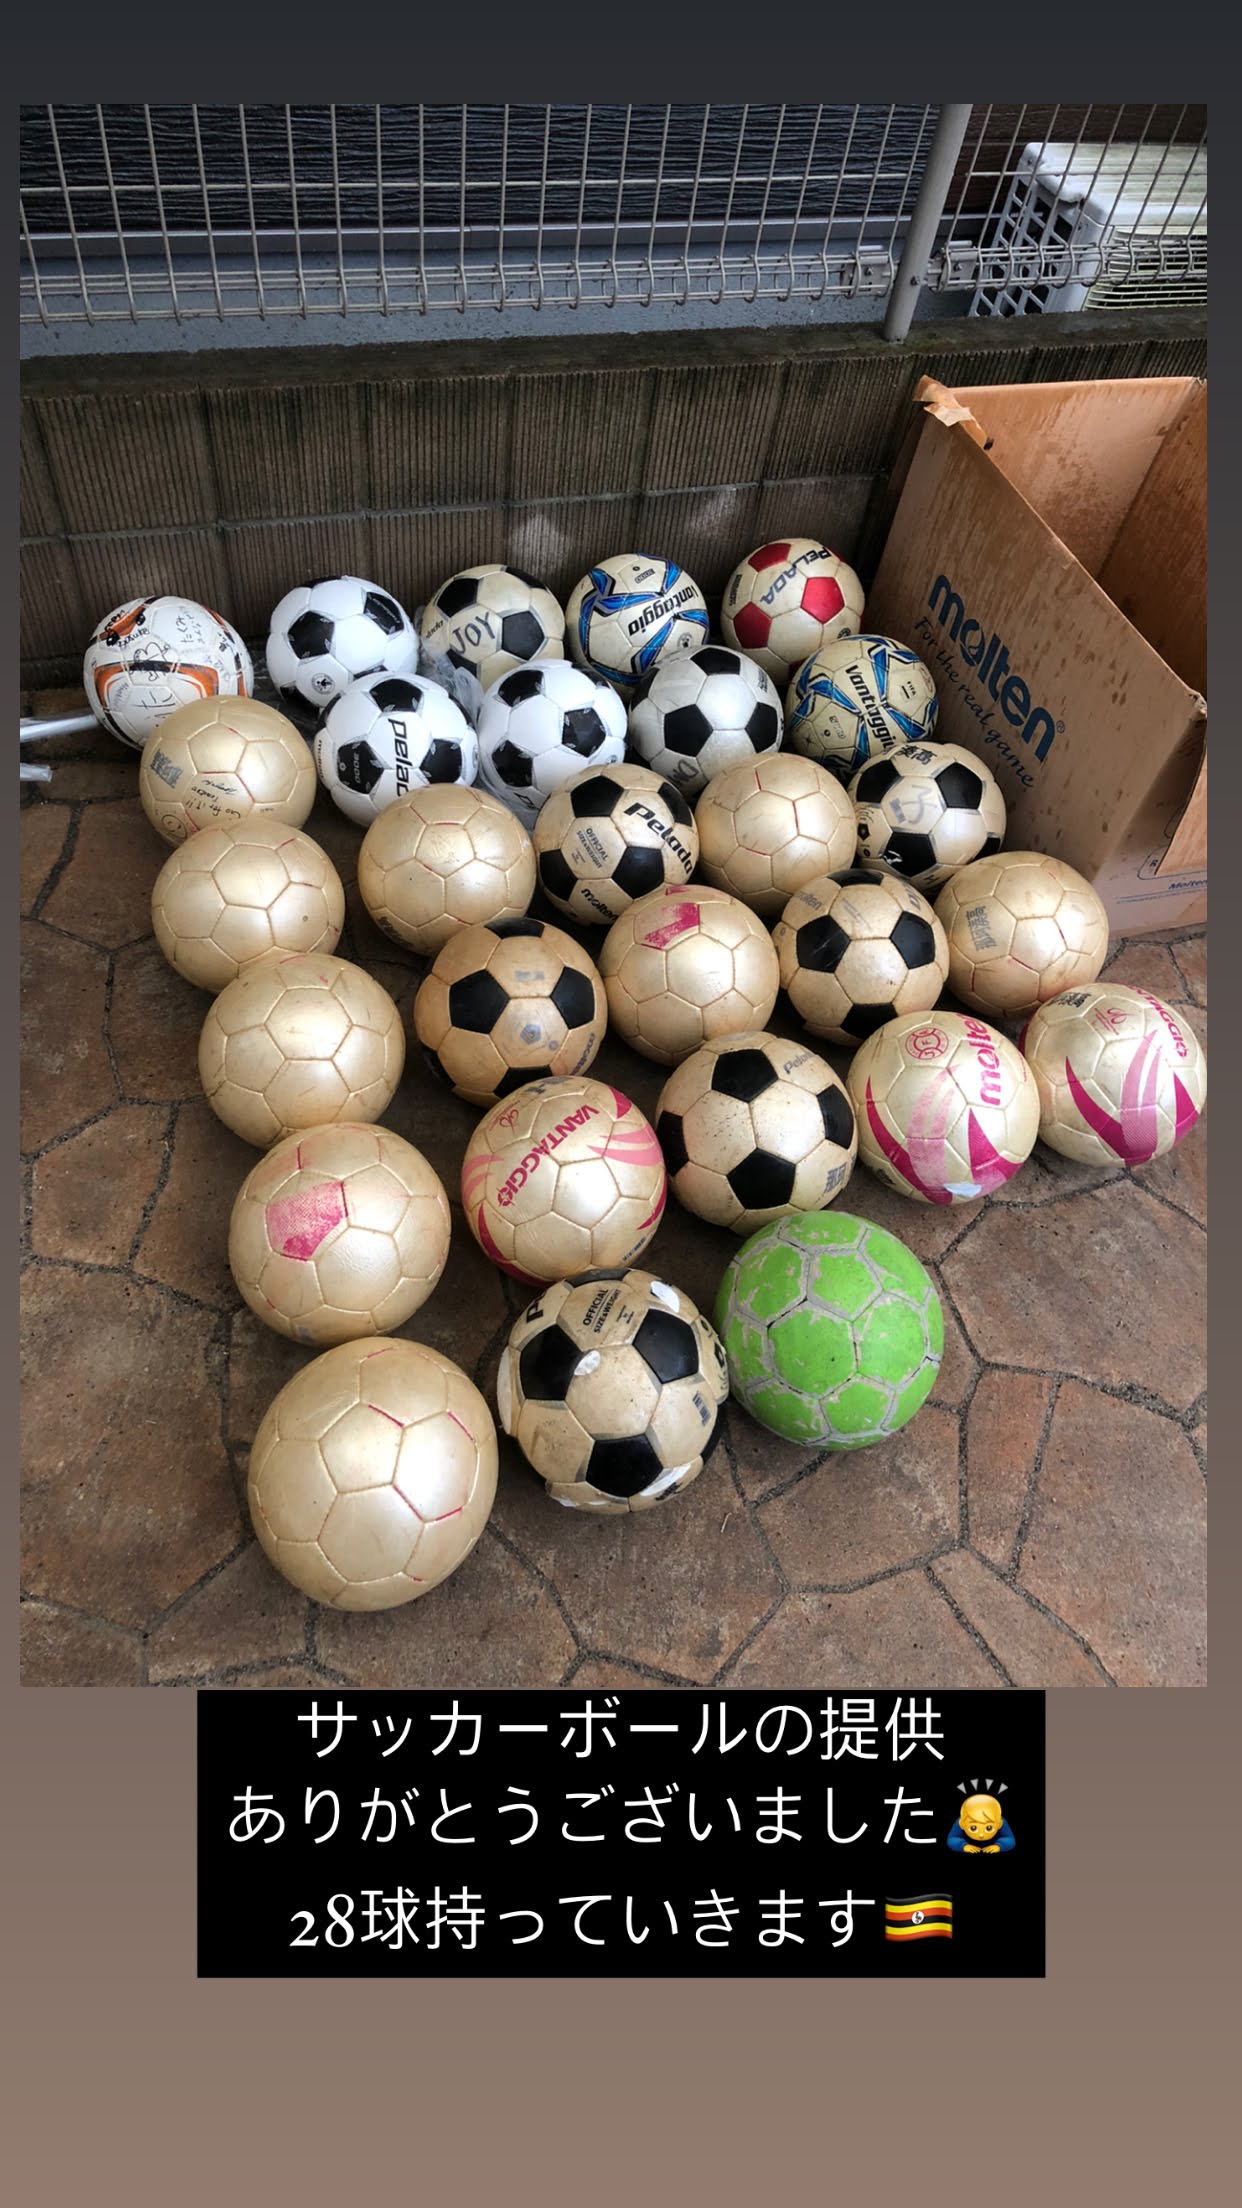 【受益者400名超え】ウガンダの田舎で20の村にサッカーボールを配った話。